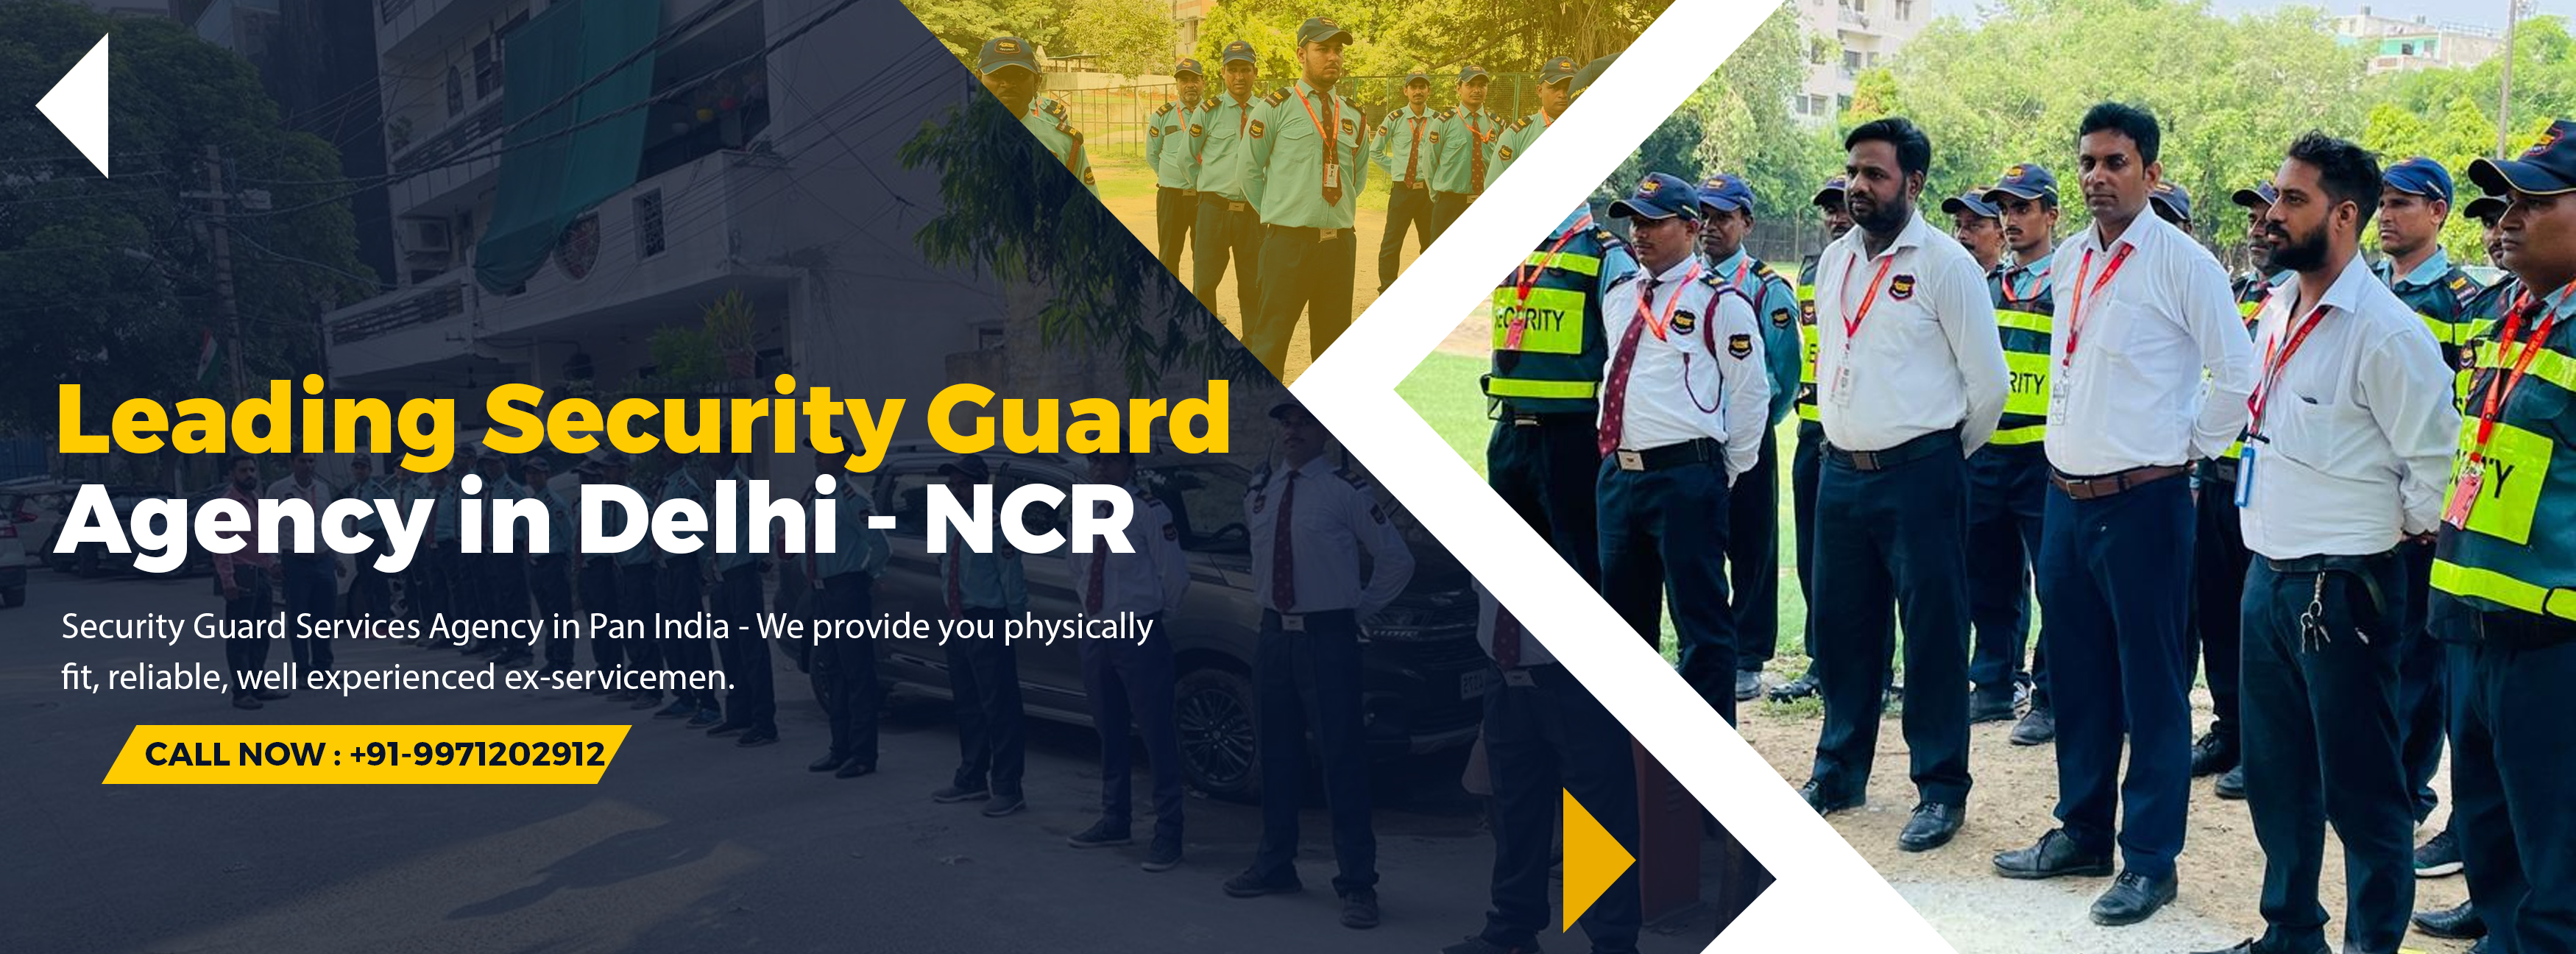 Security Guard Agency in Delhi NCR